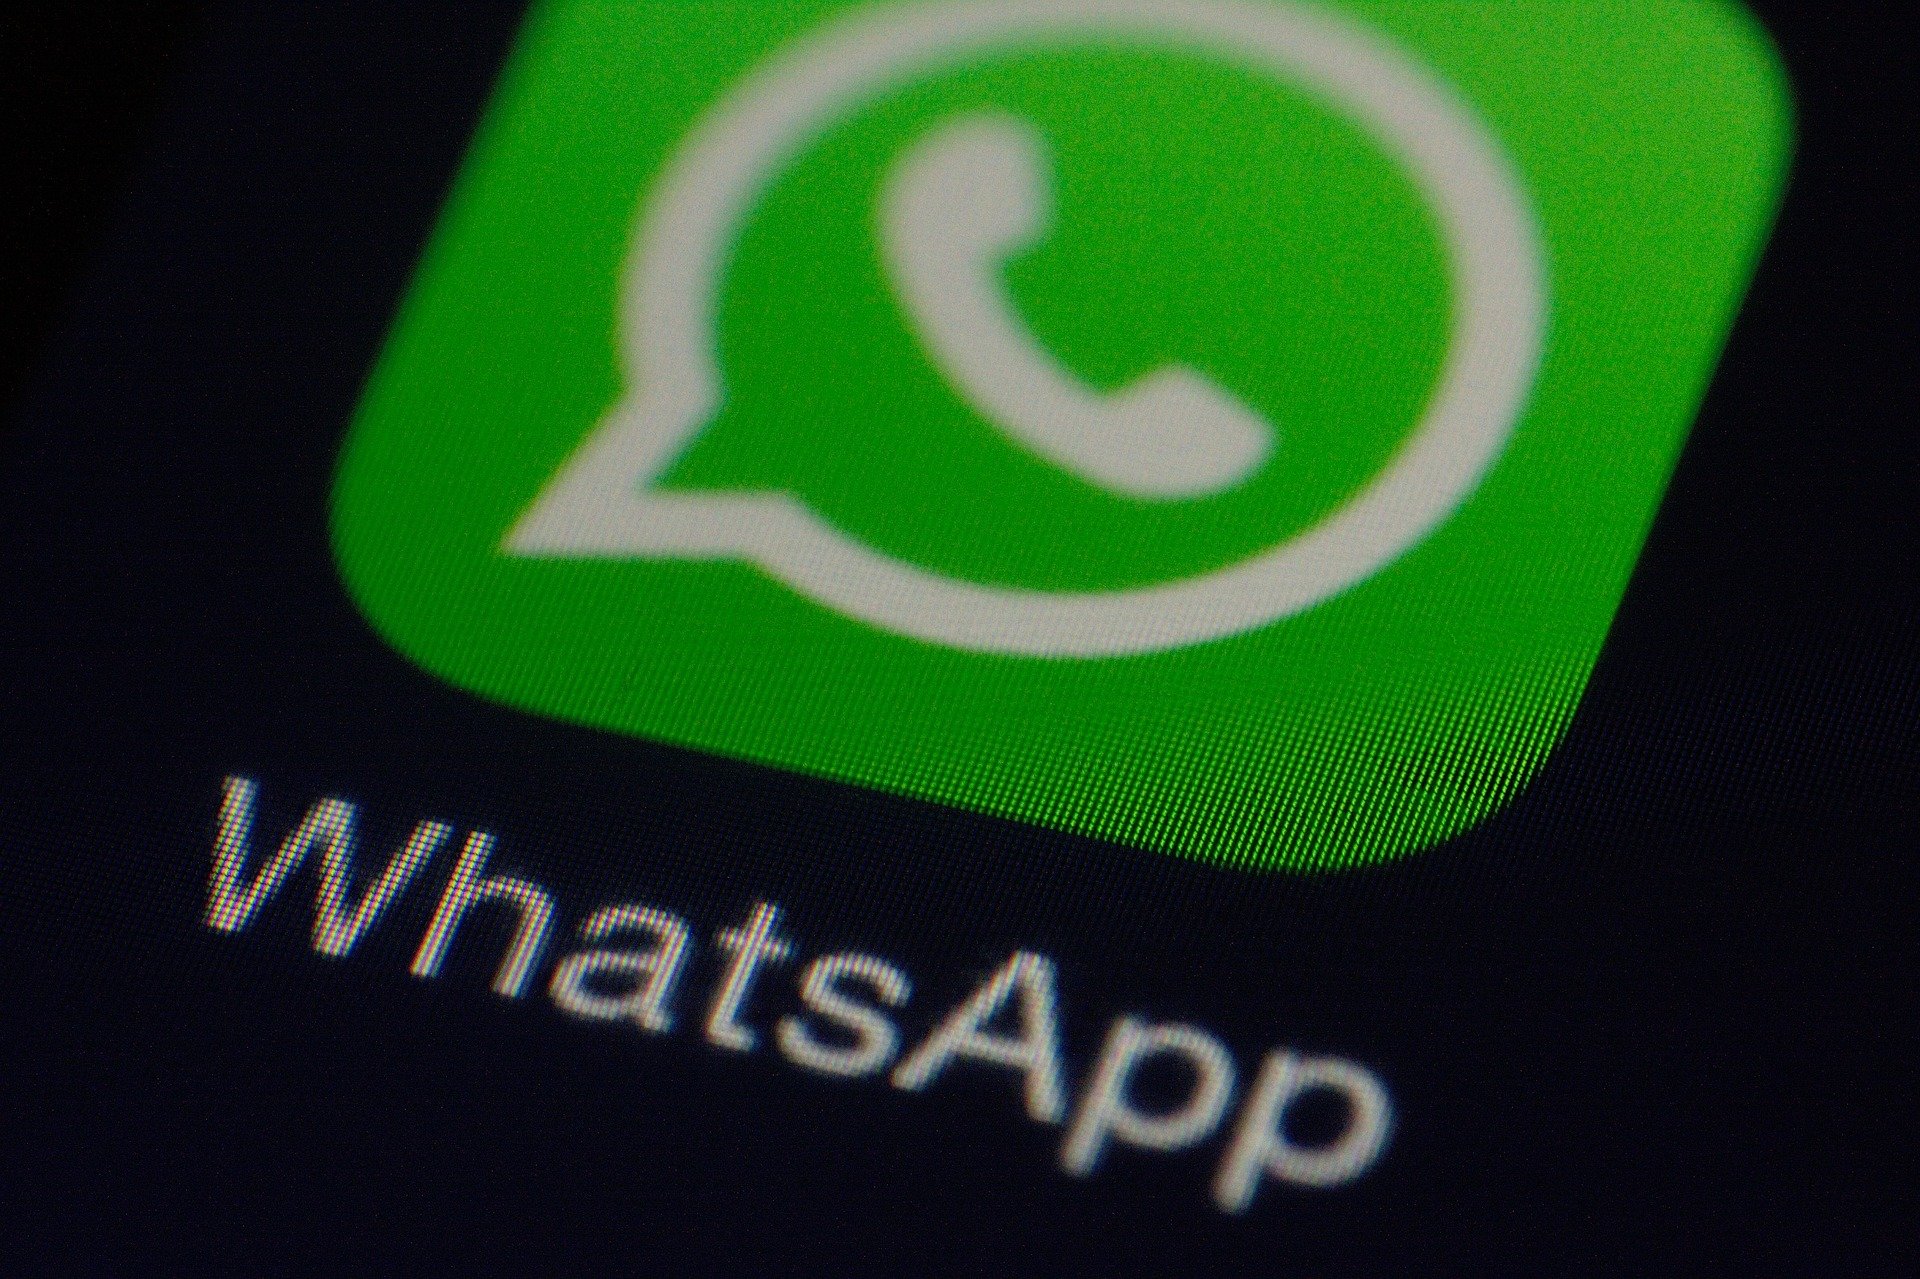 Te decimos cómo se envían las fotos y videos que se 'autodestruyen' en WhatsApp